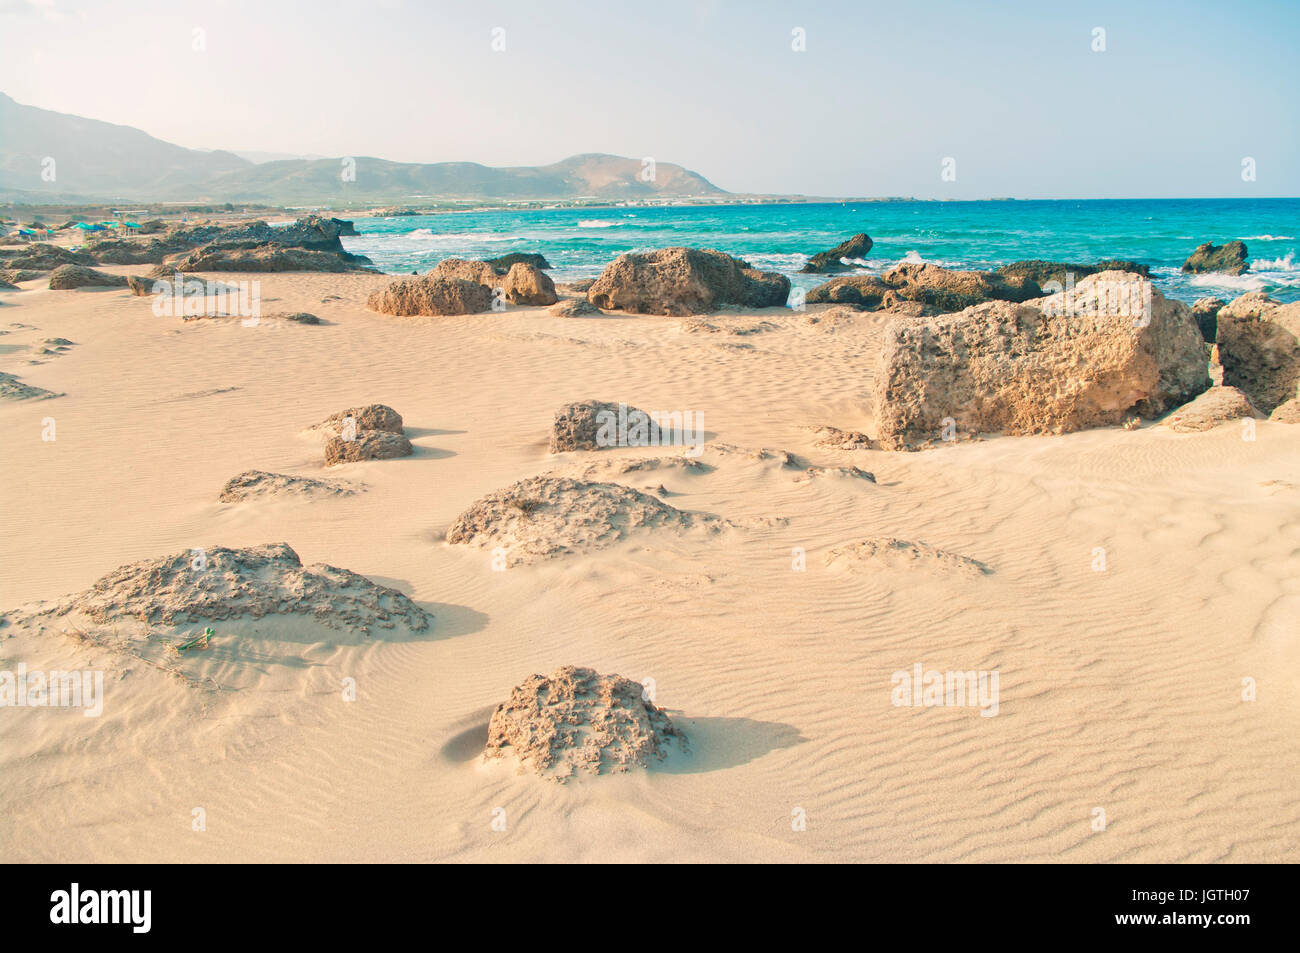 L'image traitée de rocky plage de Falasarna avec ridée entourée de montagnes de sable sur la côte Méditerranéenne, Crète, Grèce Banque D'Images